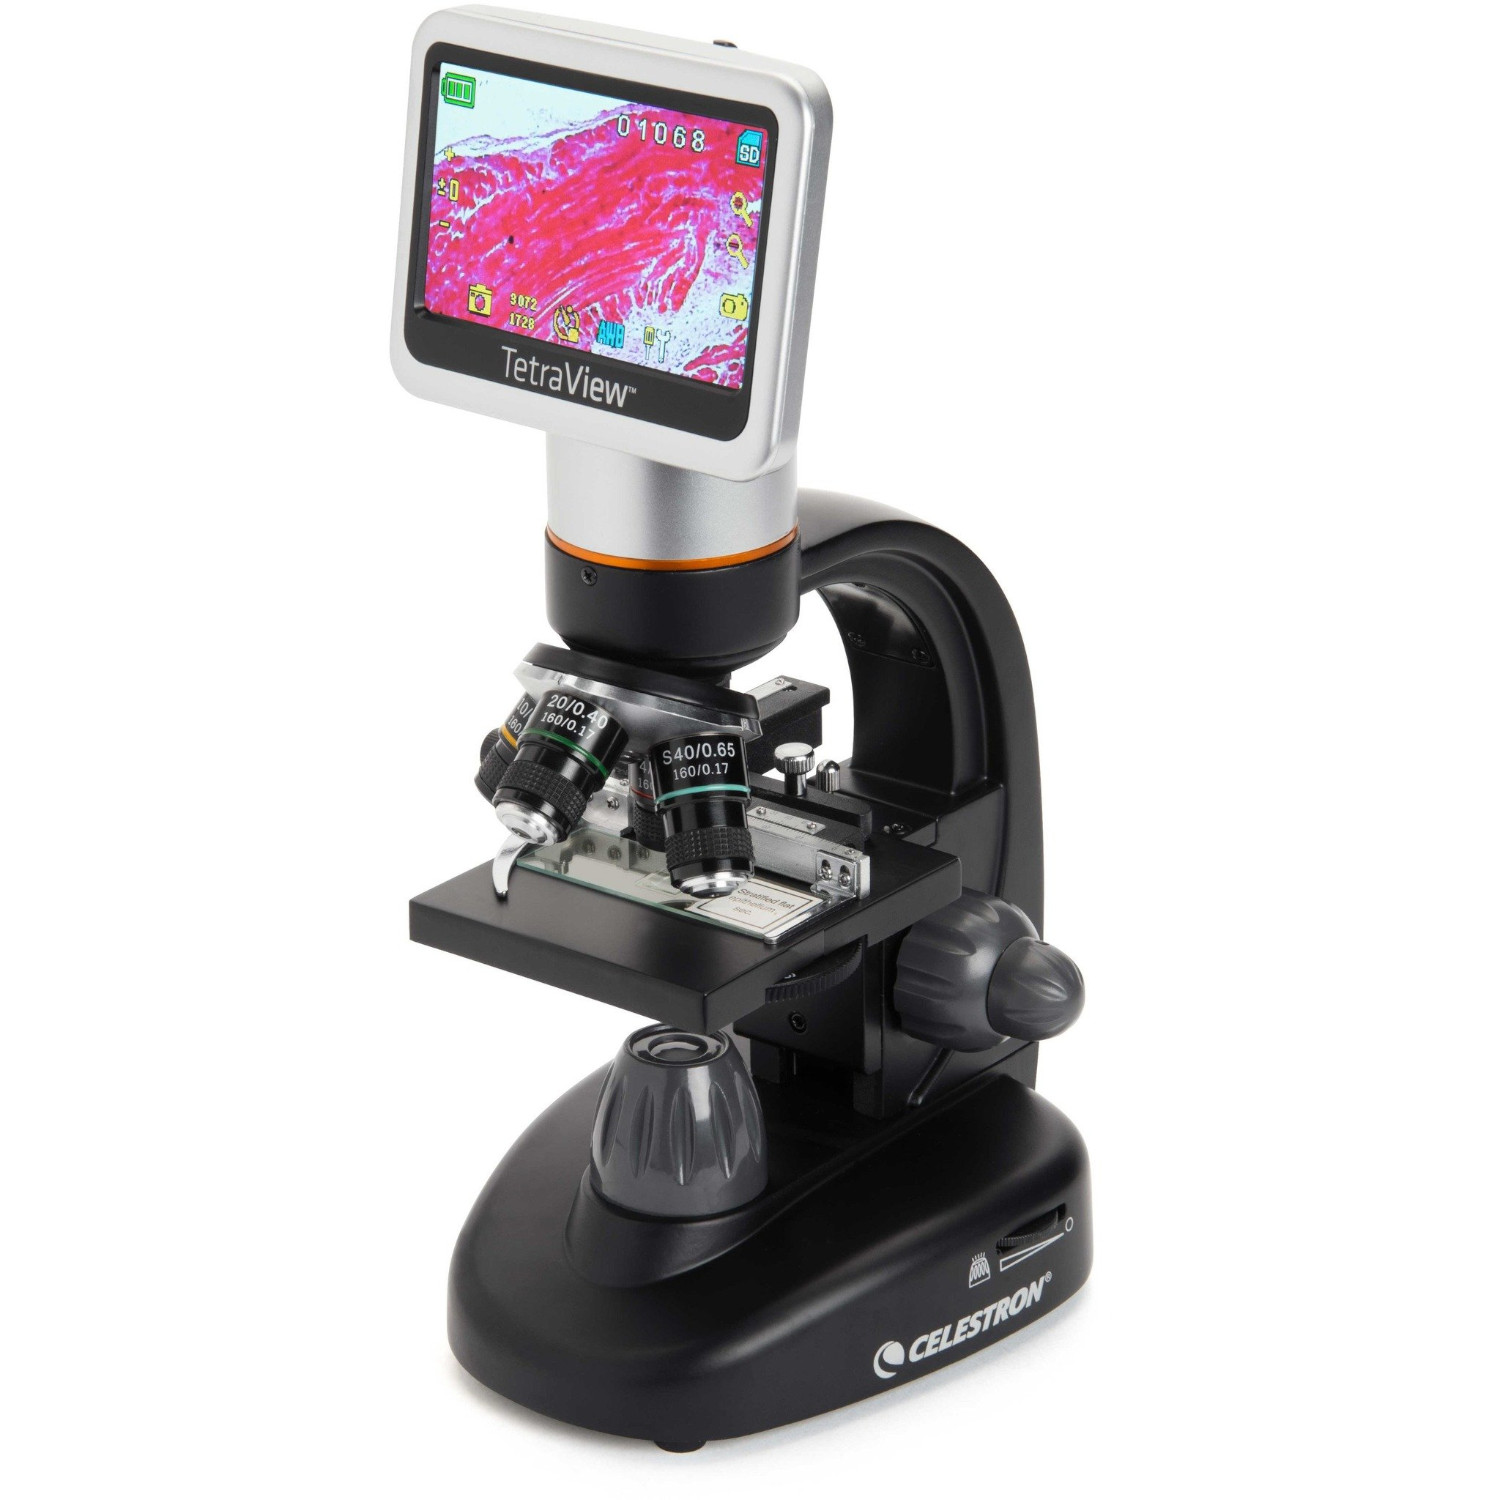 ［ビクセン］CELESTRON 顕微鏡 TetraView LCD デジタル顕微鏡